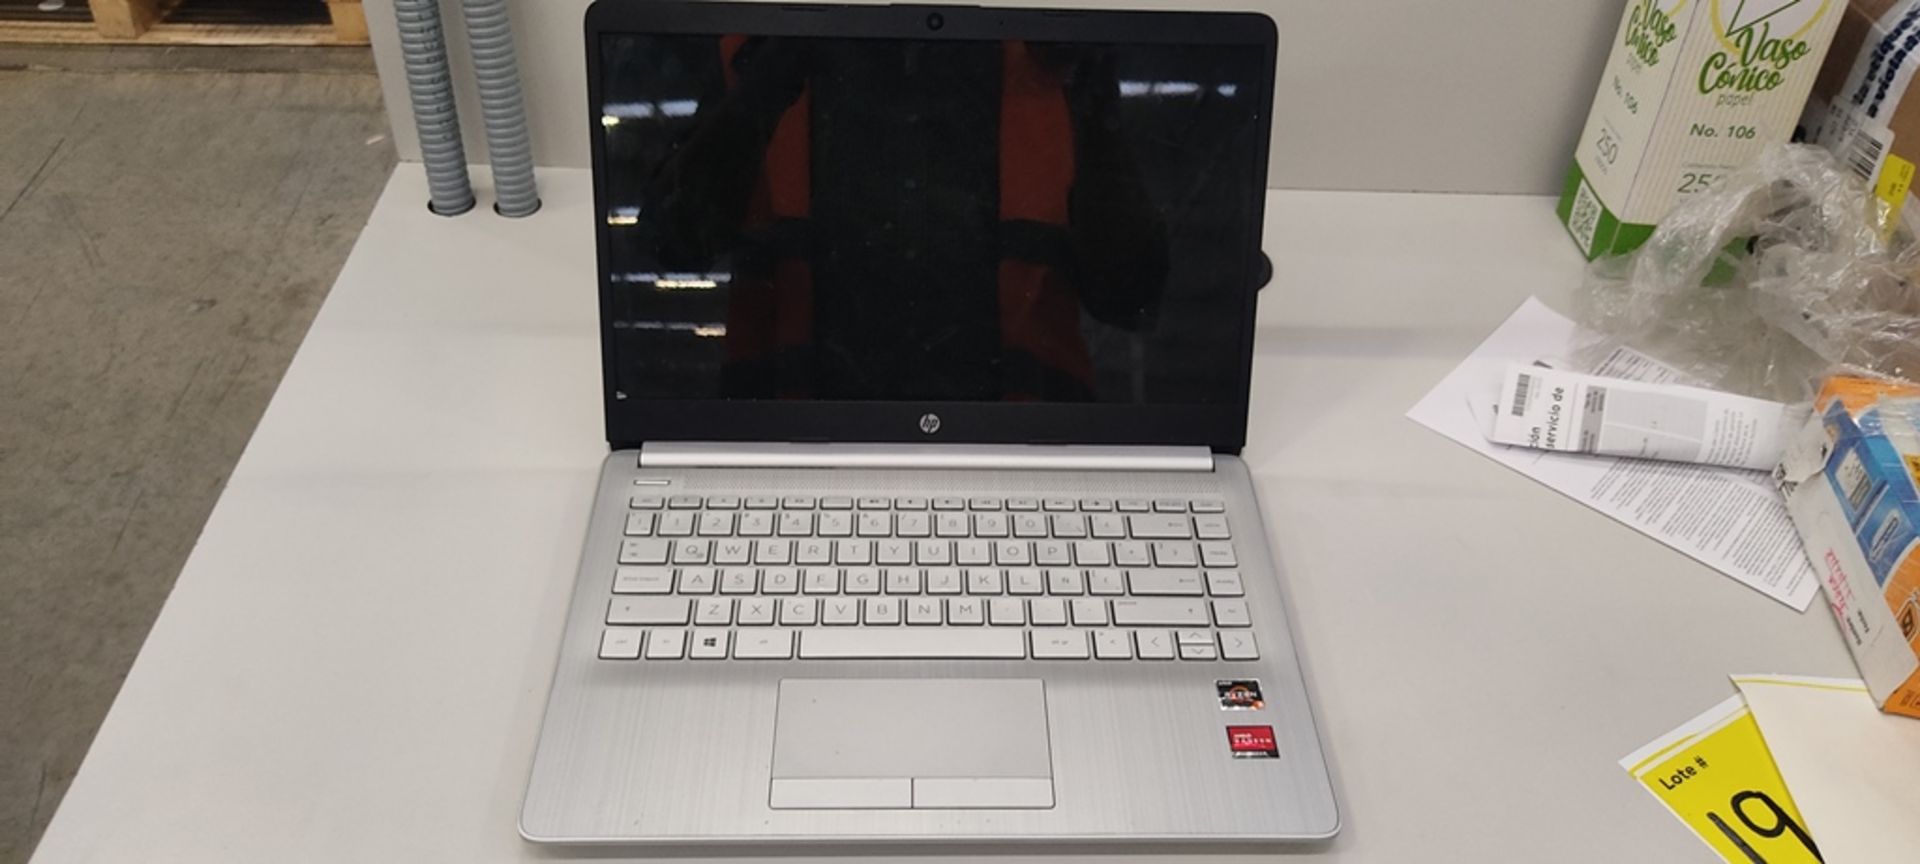 1 Computadora tipo laptop Marca Hp, Modelo RTL8821CE, Serie 14-DK1508La, Color Gris, unidad de esta - Image 5 of 12